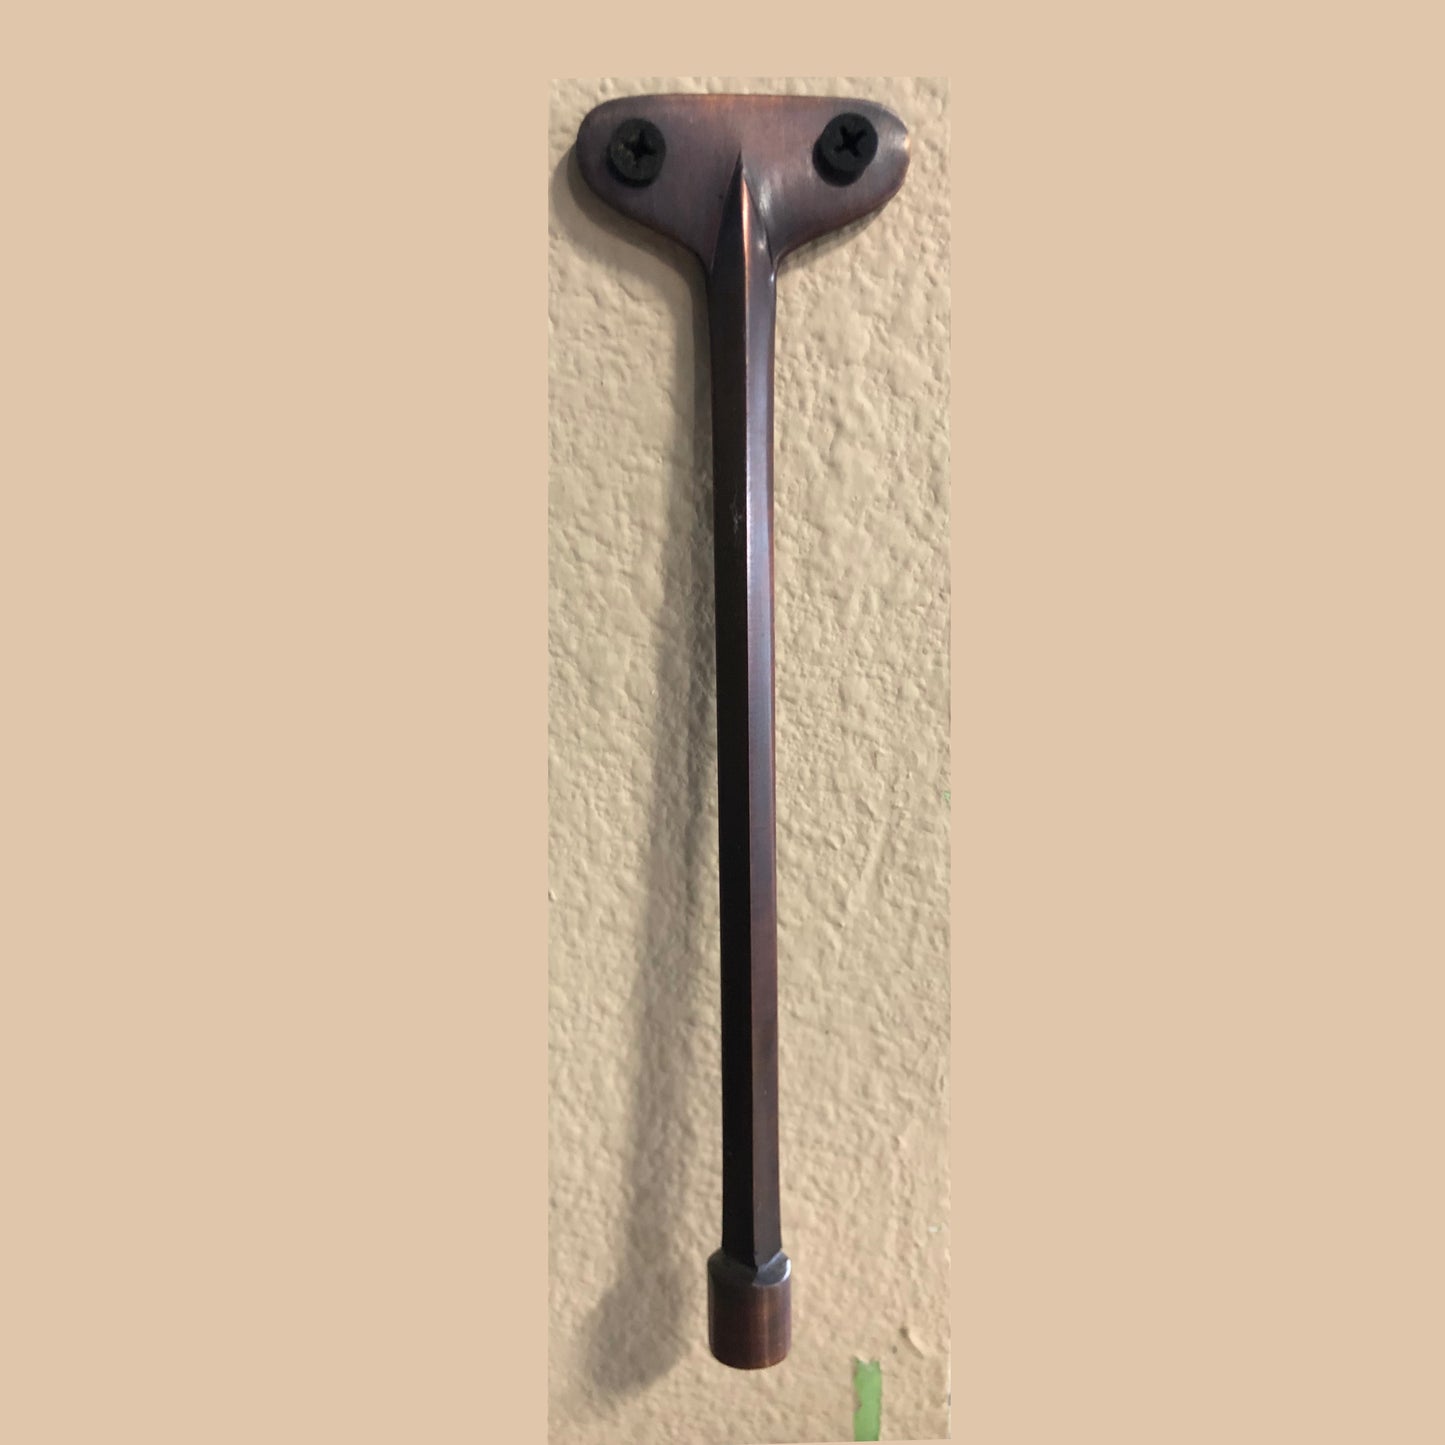 Dagan 8" Gas Valve Key VK8-516-BR - Bronze